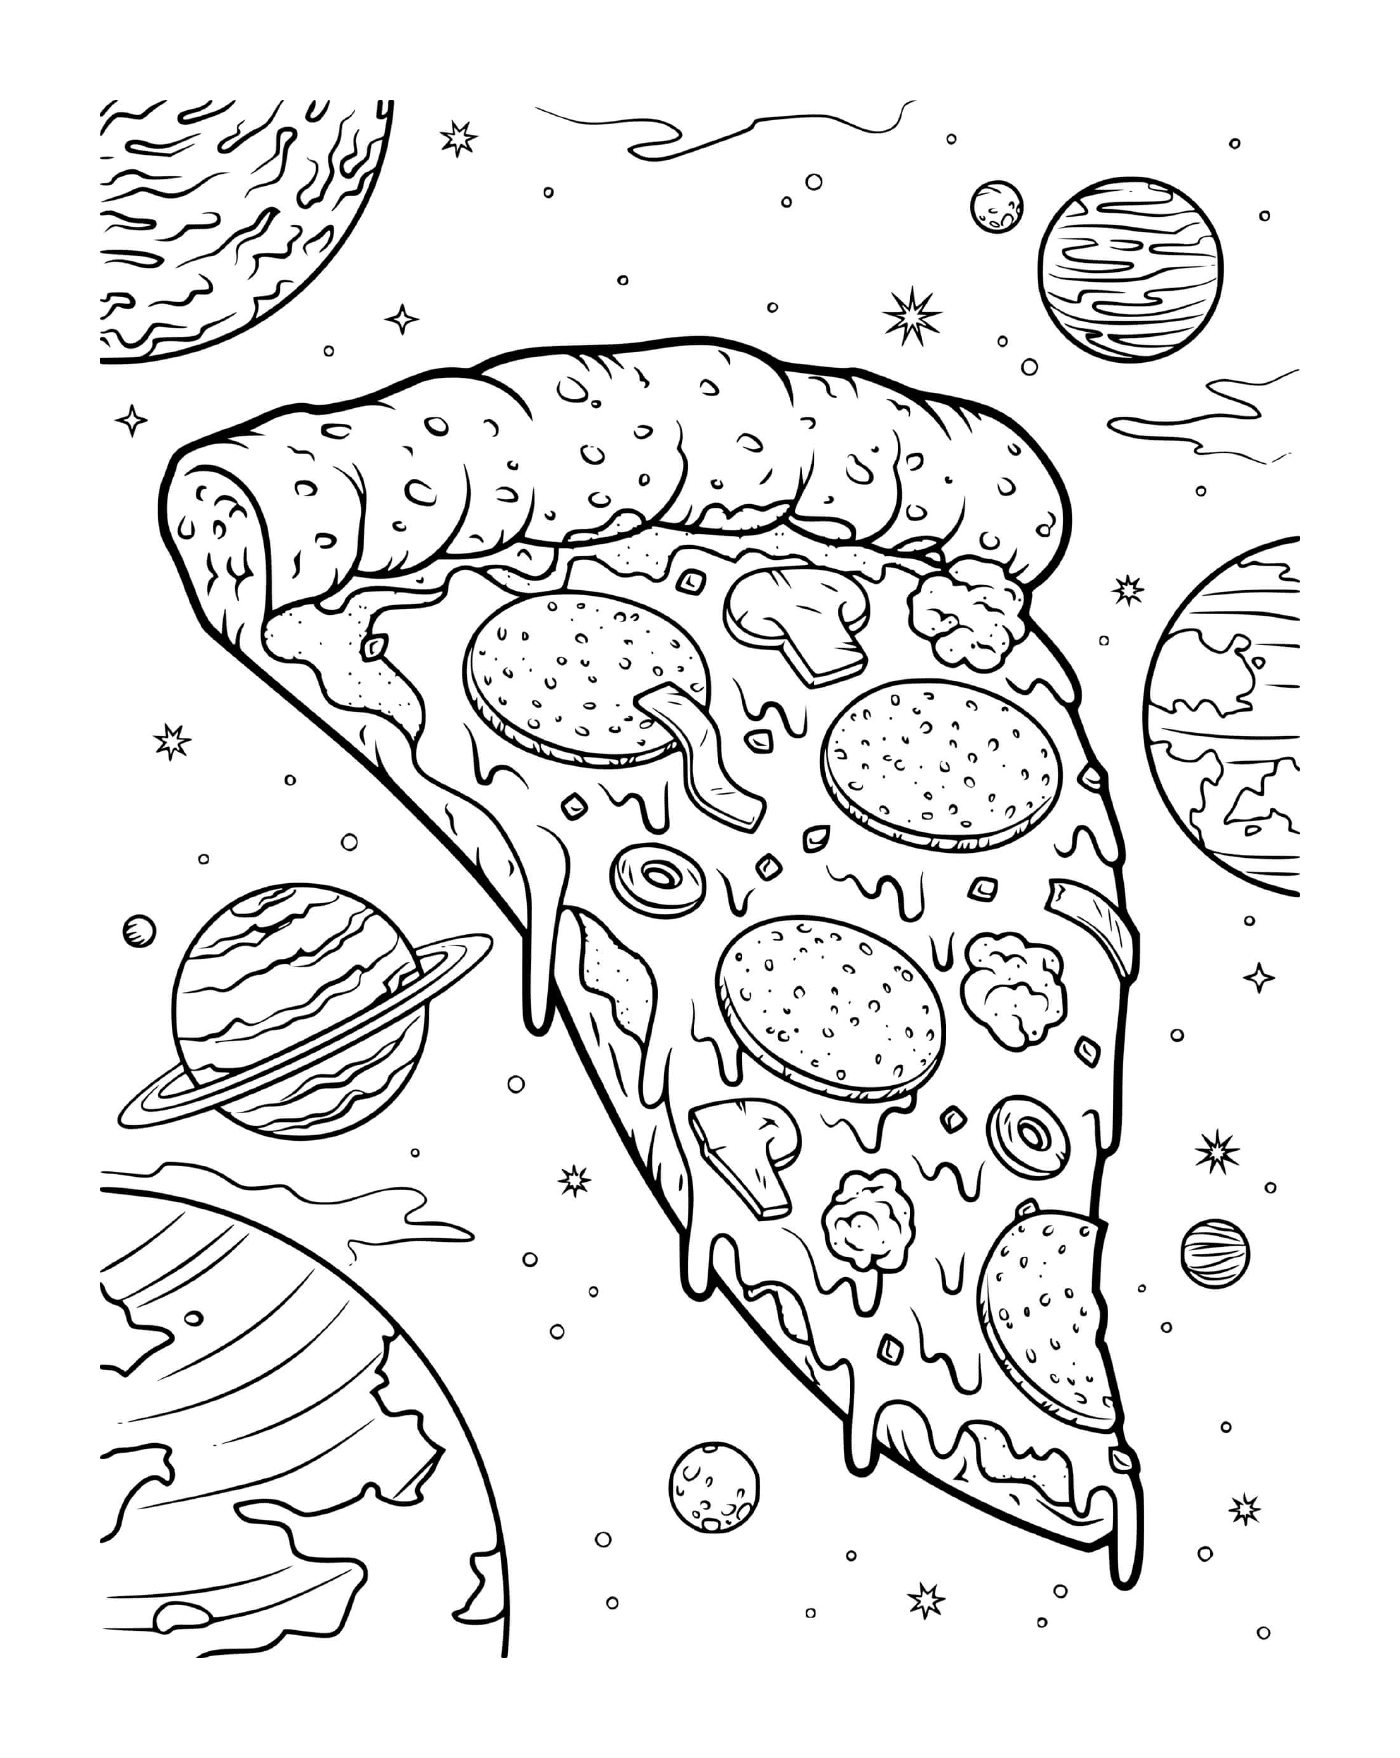  Ein Käsepilz Pizza im Weltraum 